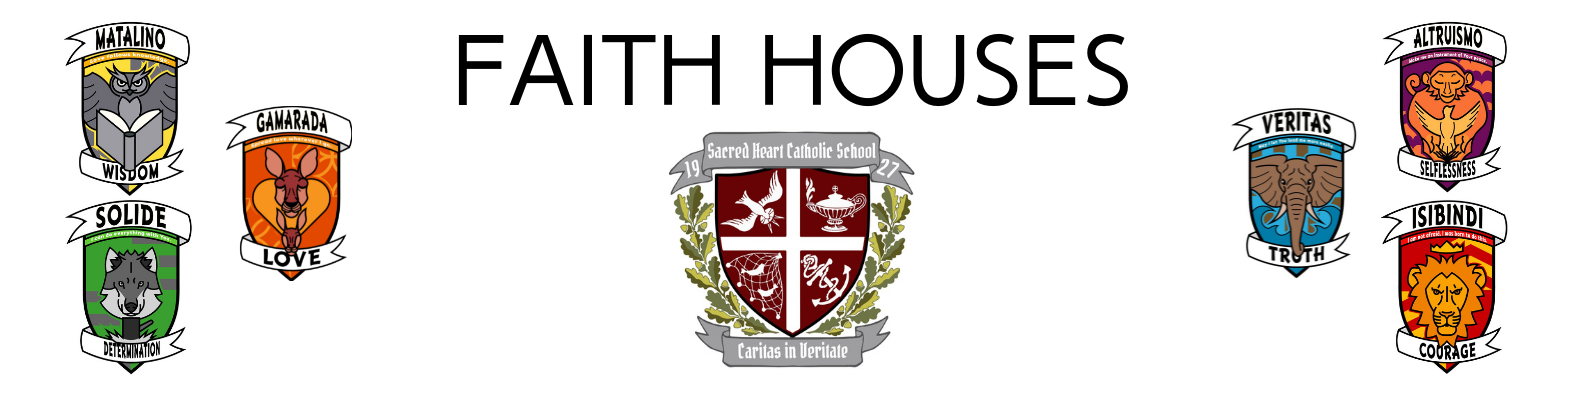 FAITH HOUSES (3)